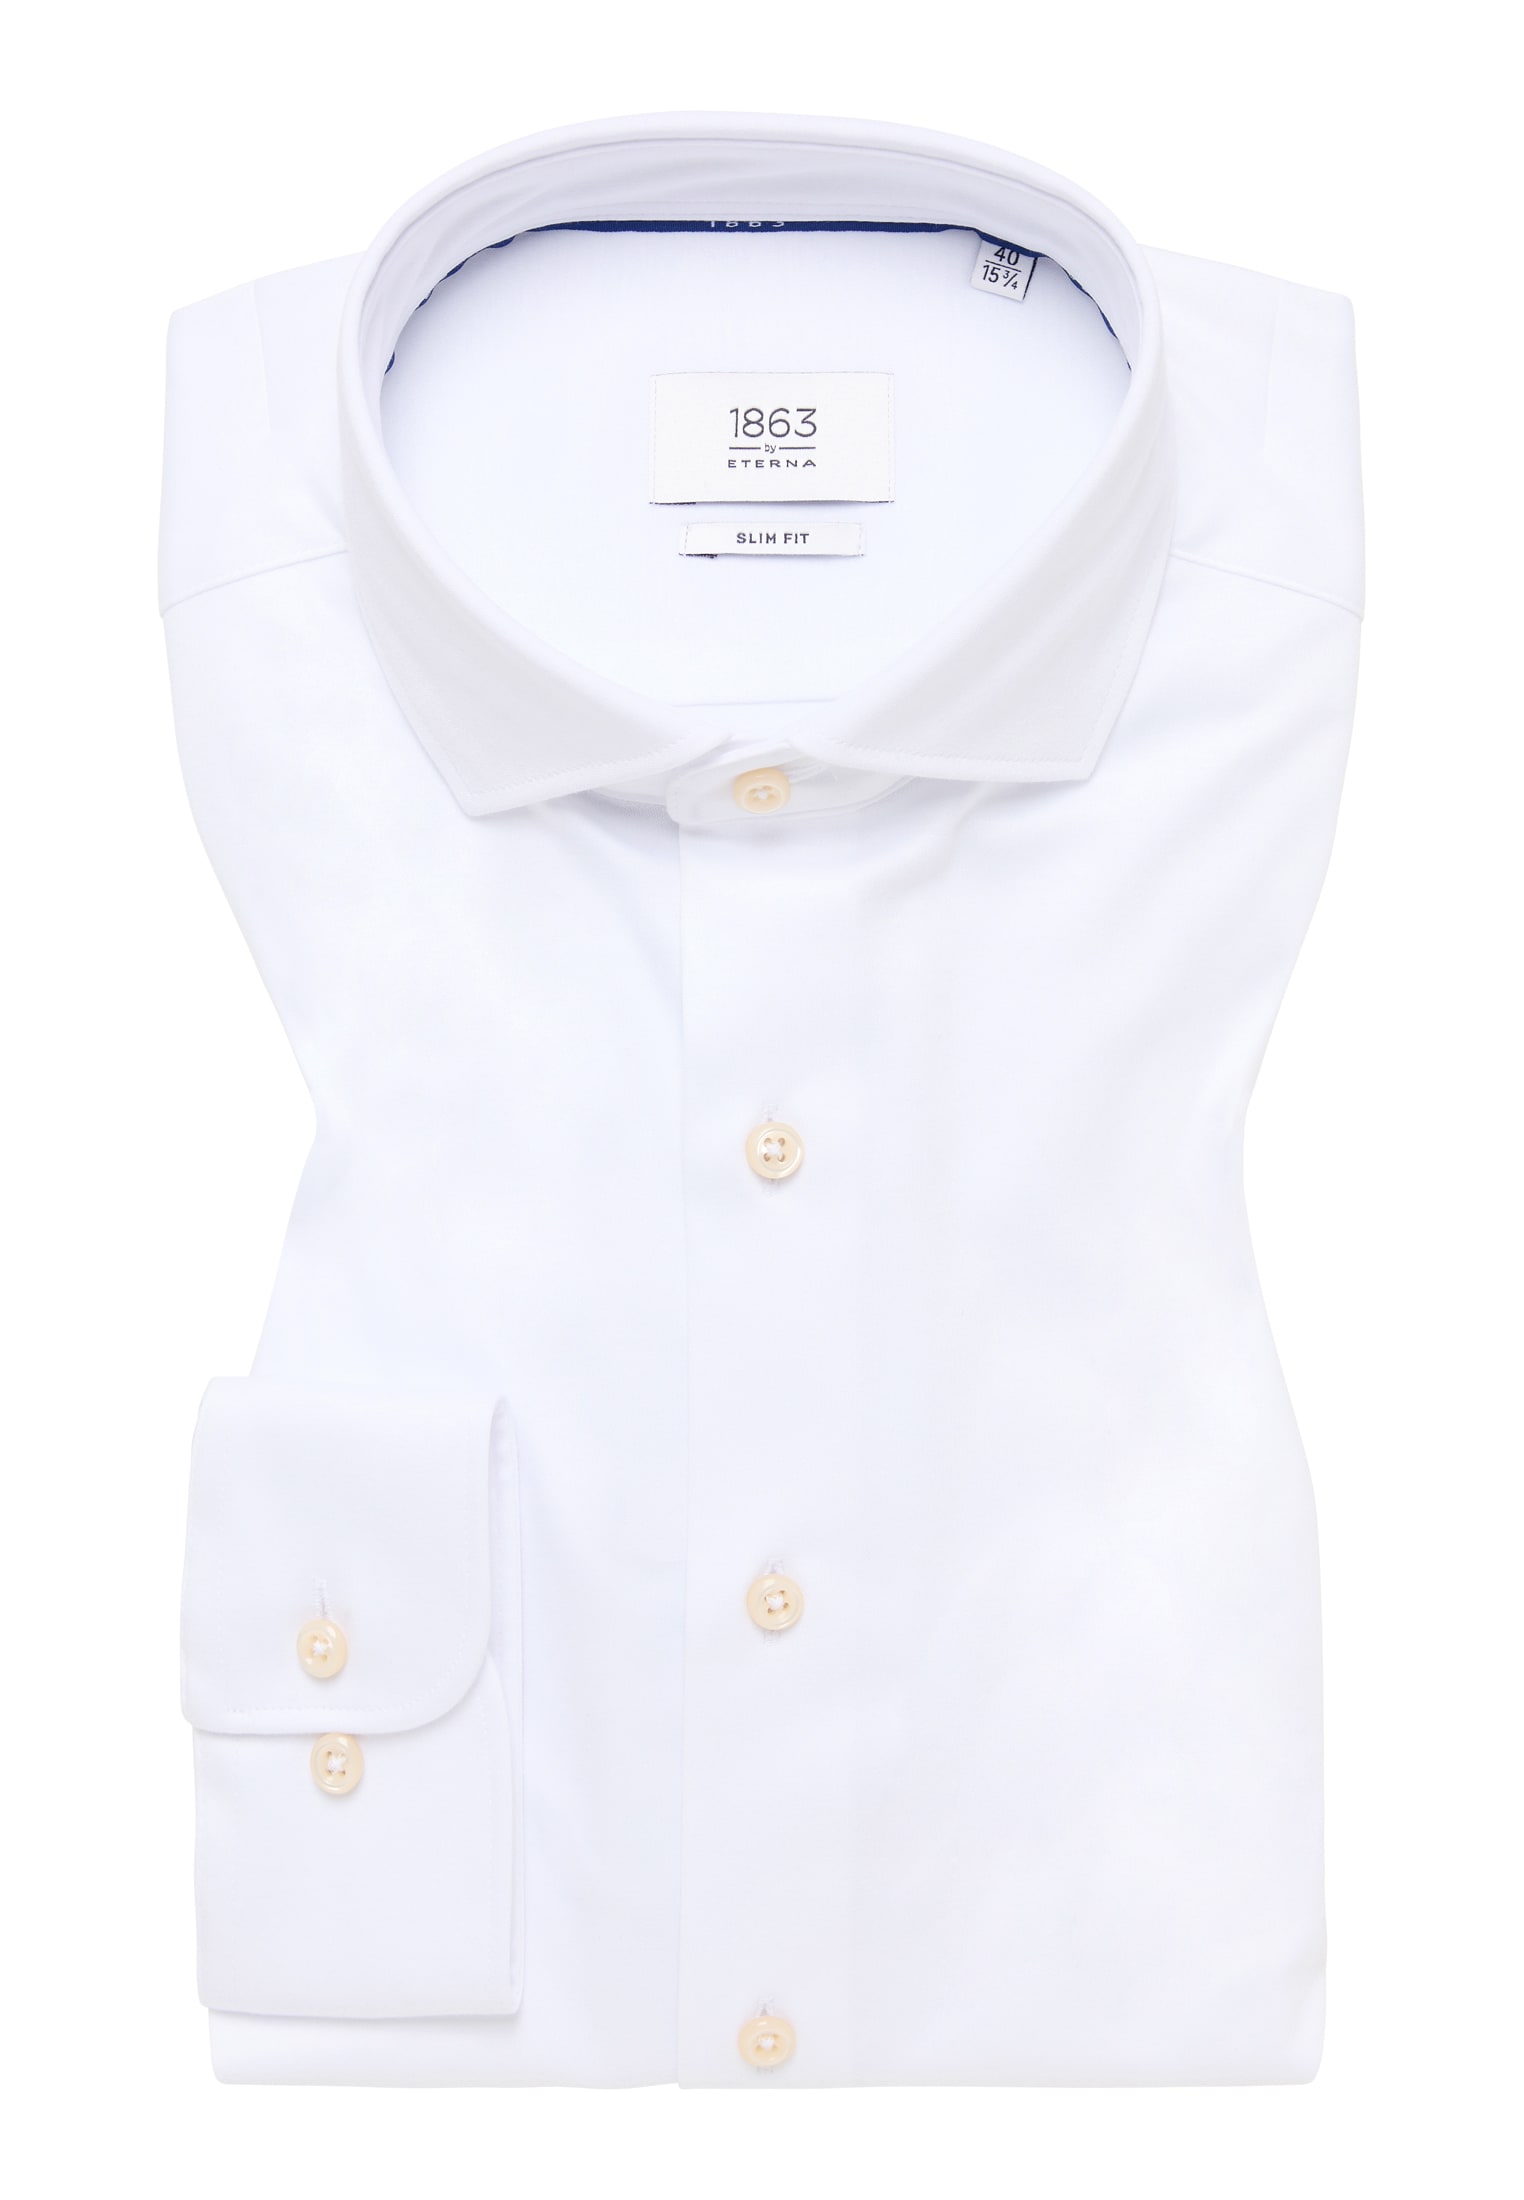 SLIM FIT Jersey Shirt in weiß unifarben | weiß | 40 | Langarm |  1SH00378-00-01-40-1/1